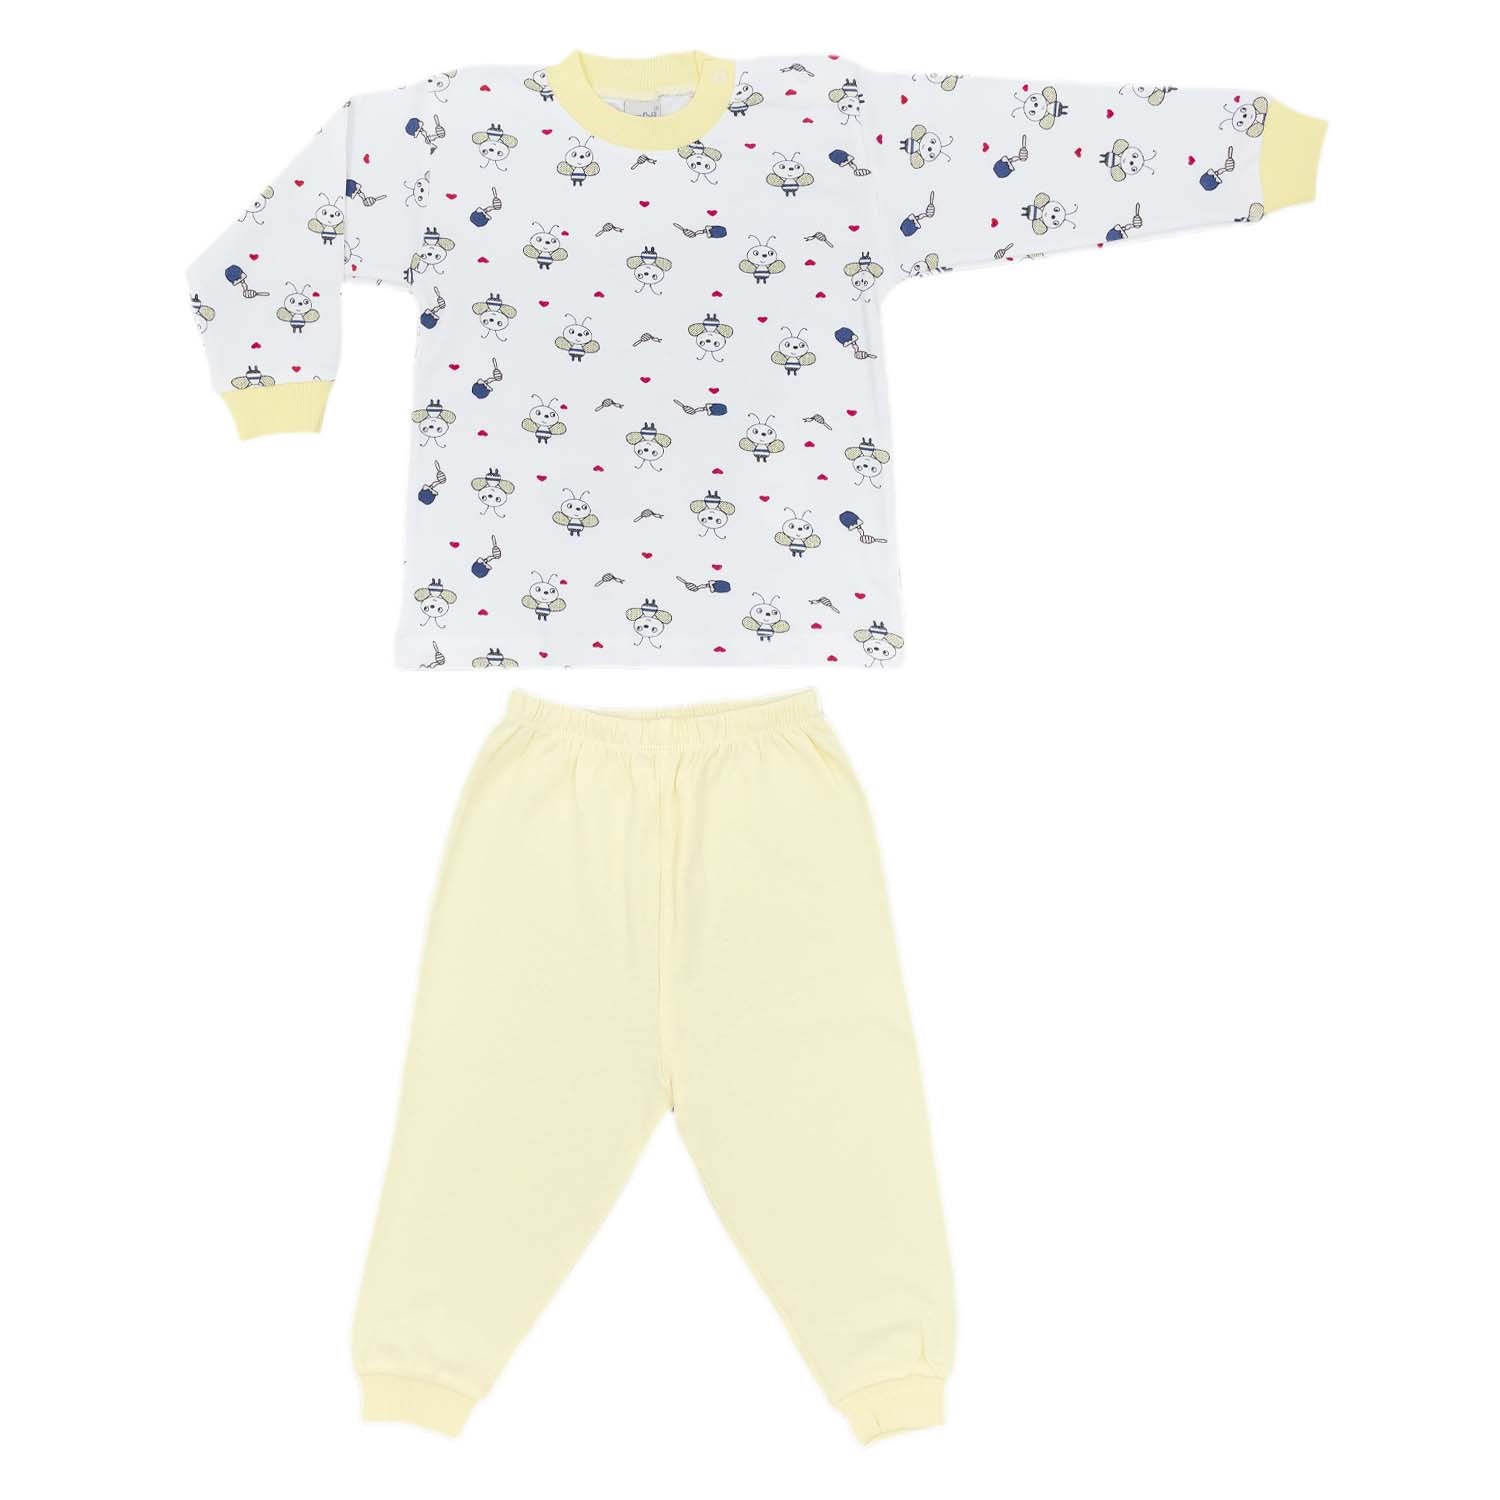 Sebi Bebe Bebek Pijama Takımı 2405 Sarı